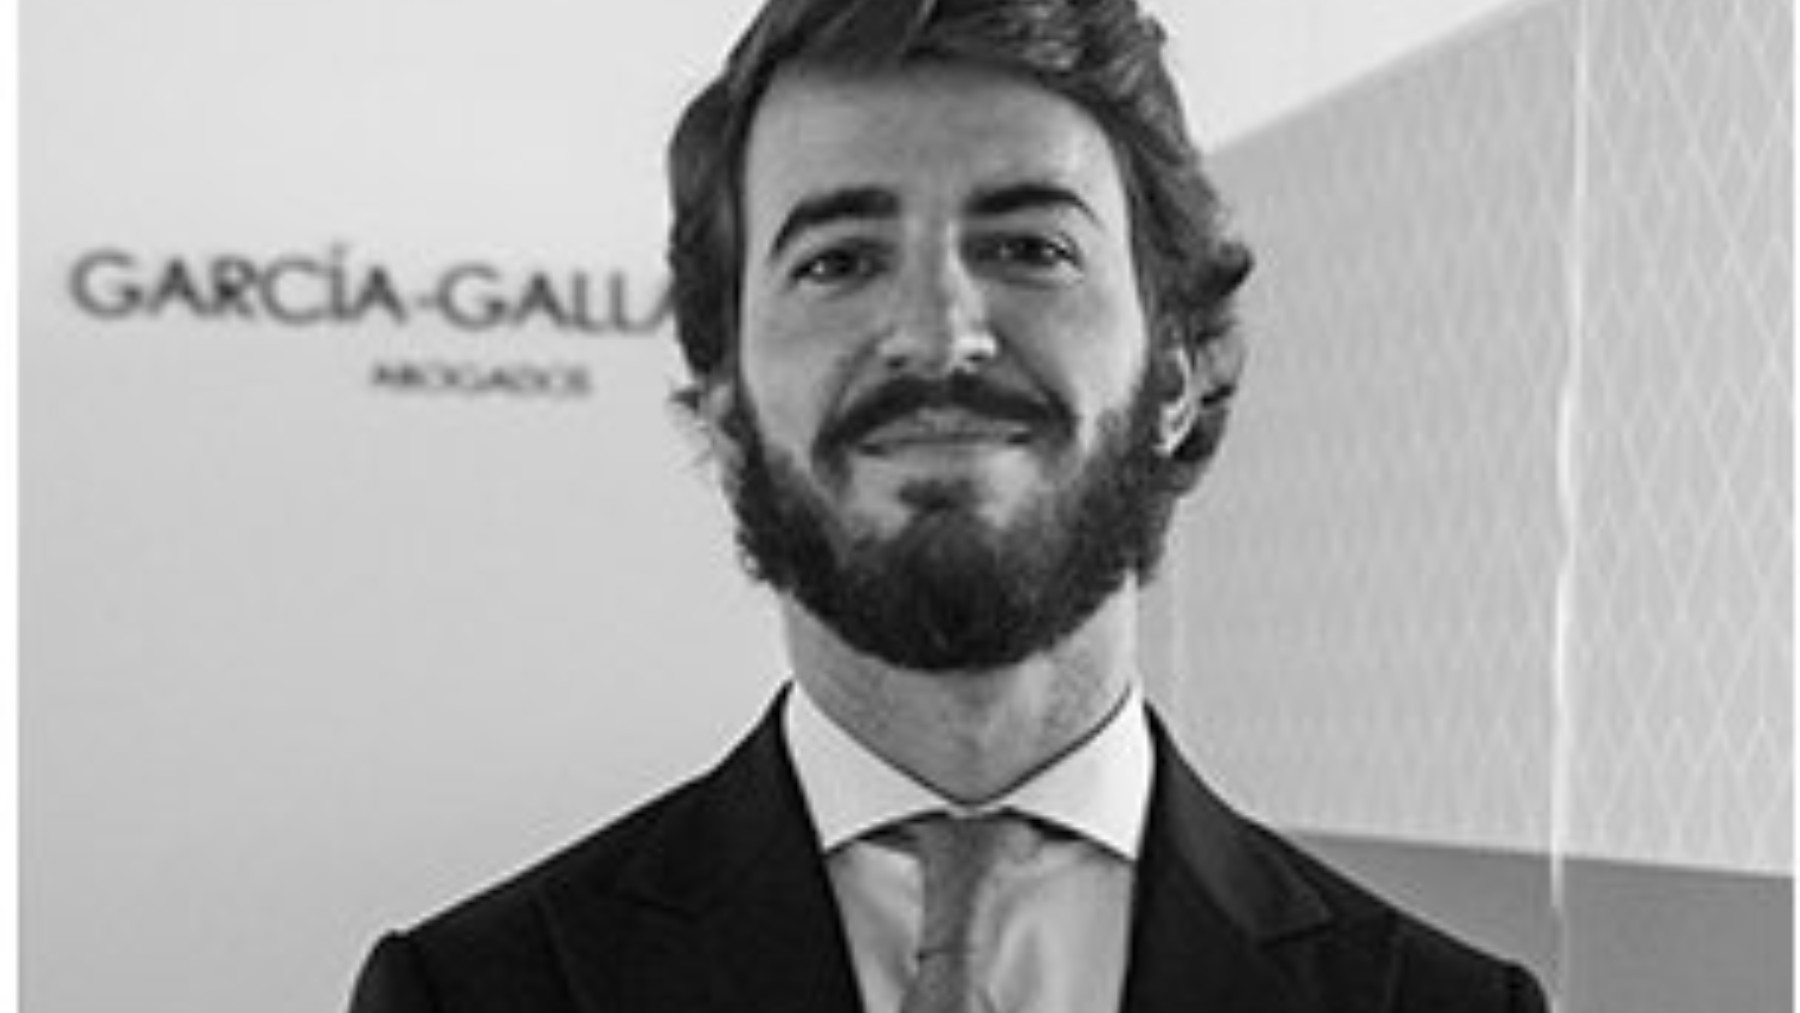 Juan García-Gallardo, candidato de Vox a la Junta de Castilla y León. (Foto: Bufete García-Gallardo)